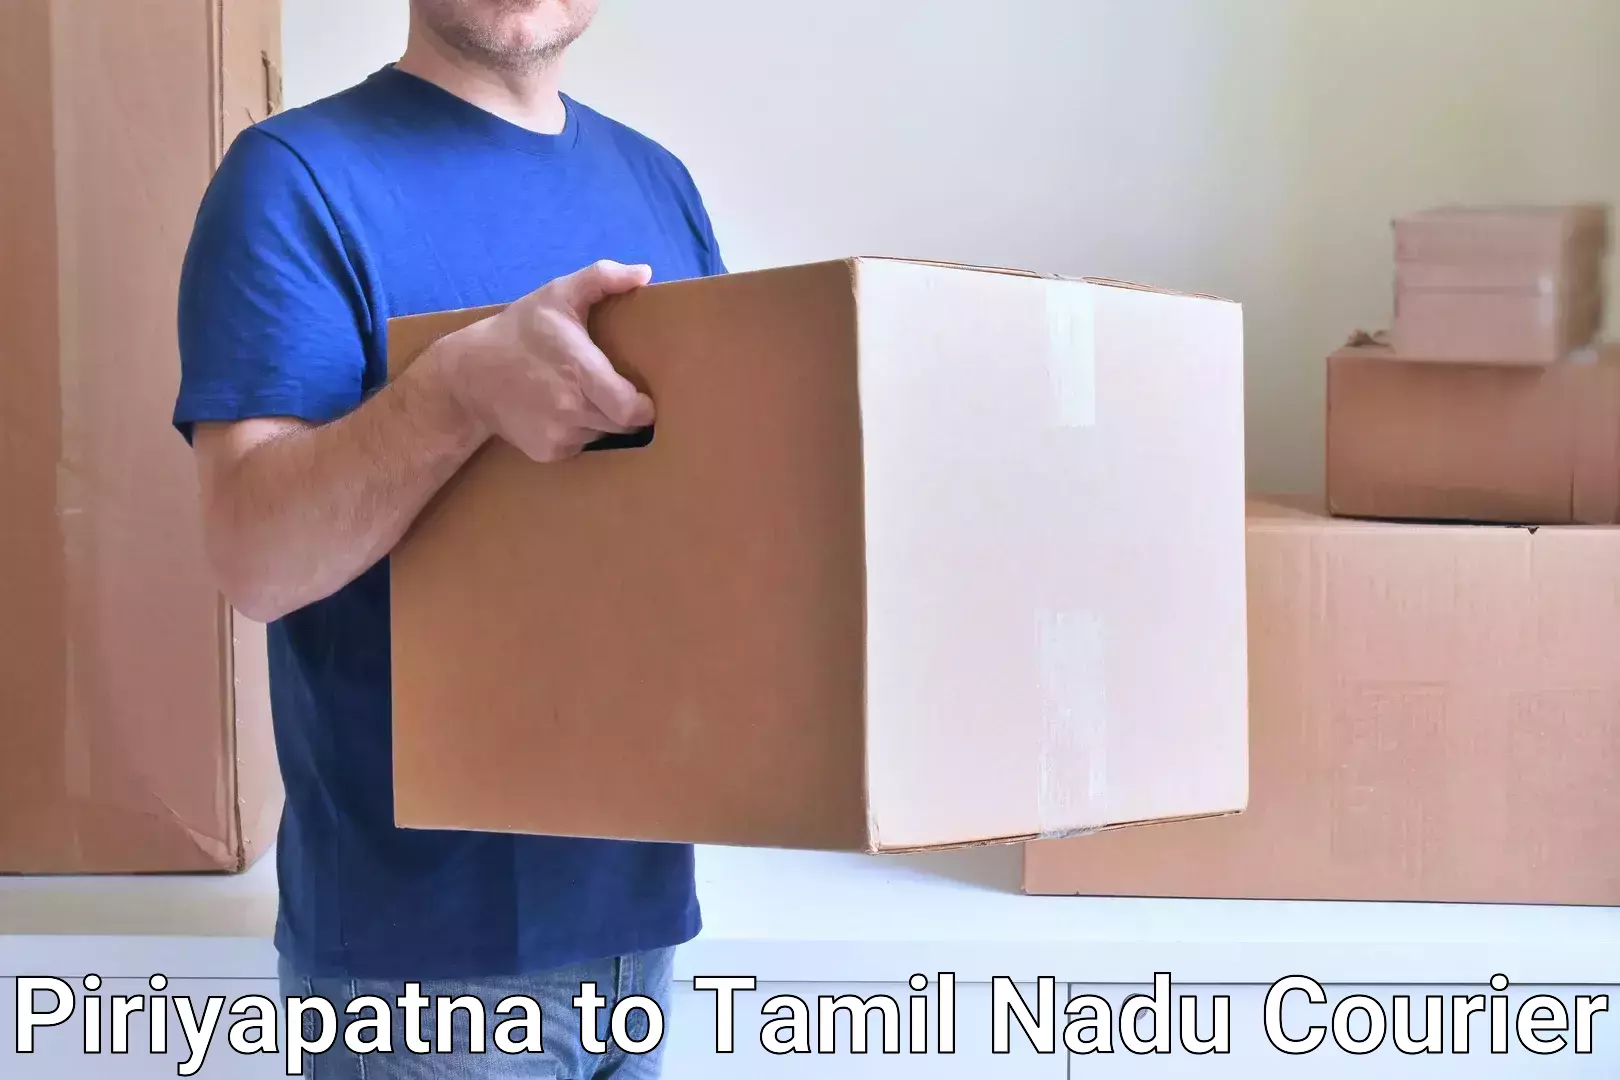 Urgent courier needs Piriyapatna to Avadi